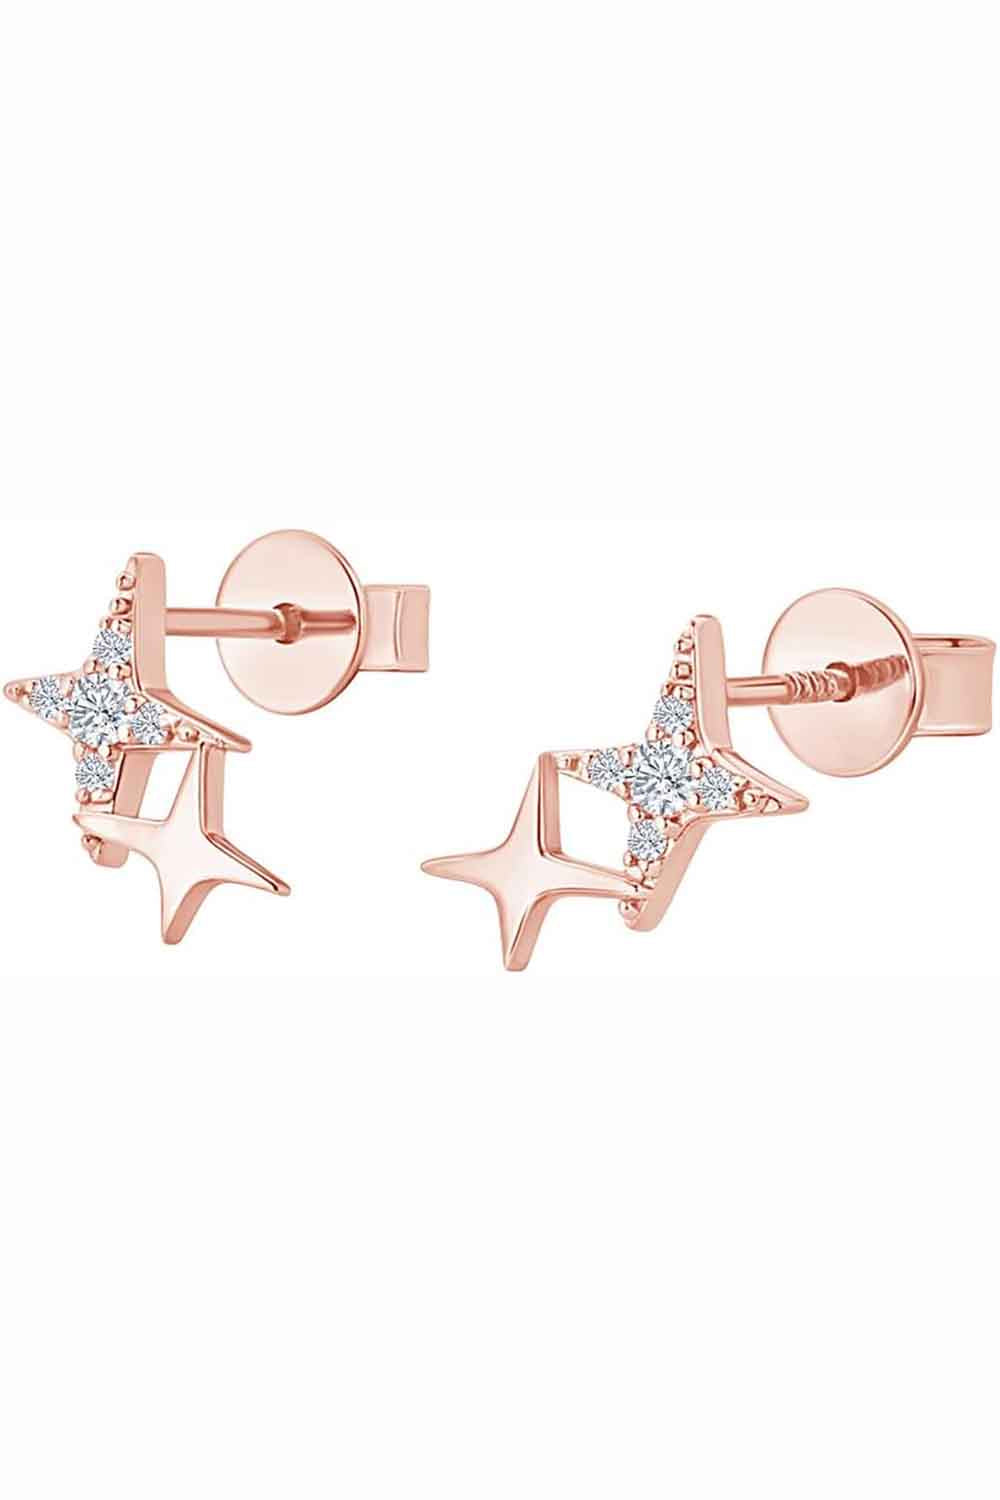 Rose Gold Color Diamond Star Stud Earrings, Stud Earrings for Women 